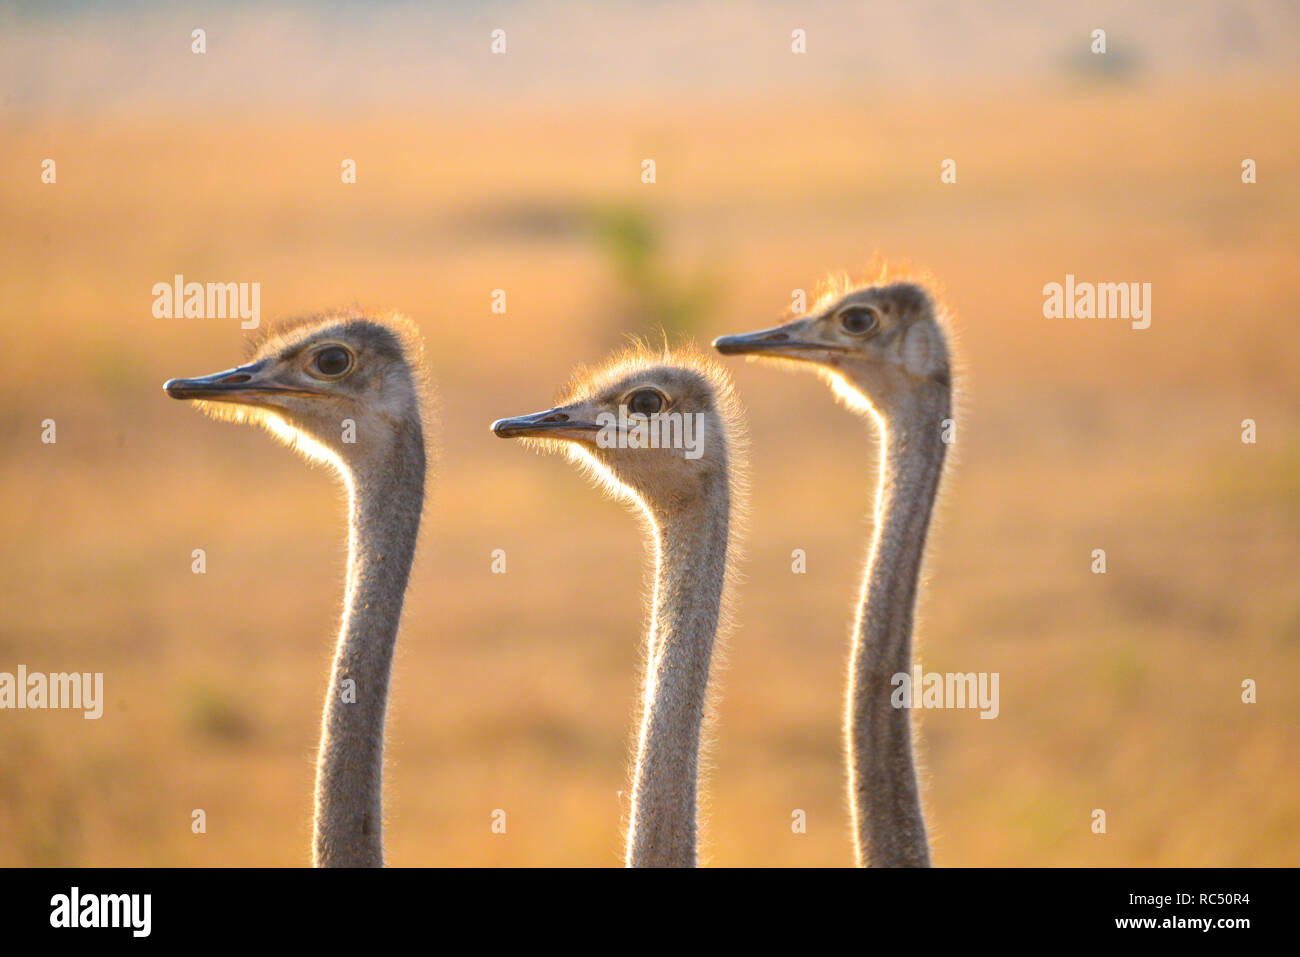 close up of female ostriches in Masai Mar wild park in Kenia, Africa Stock Photo